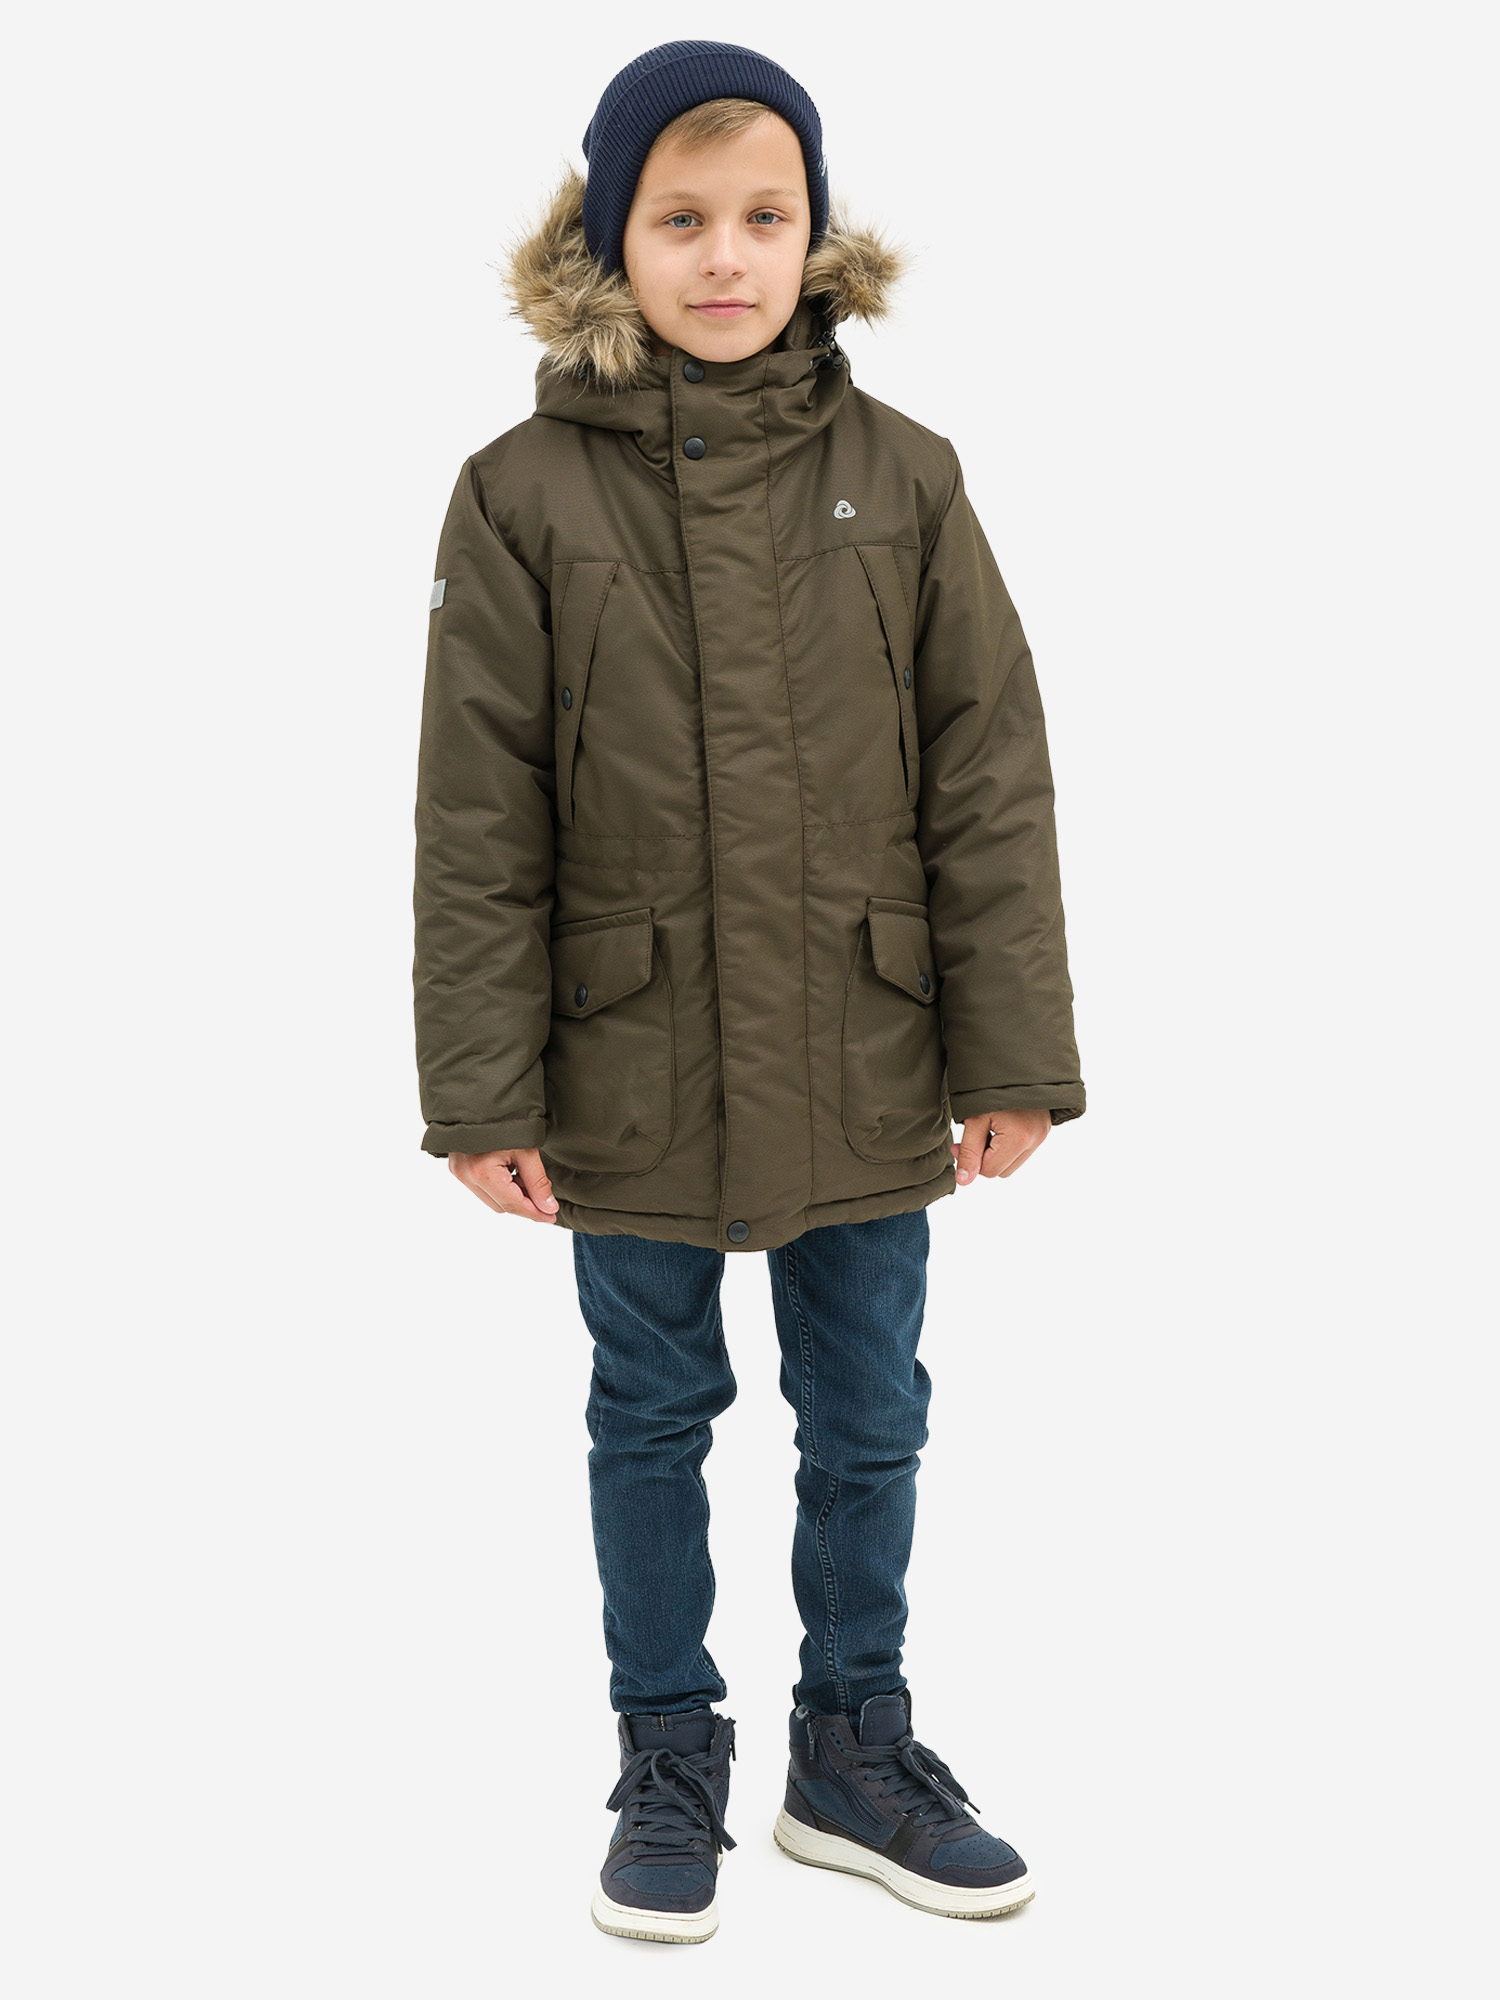 Куртка детская зимняя CosmoTex, Коричневый